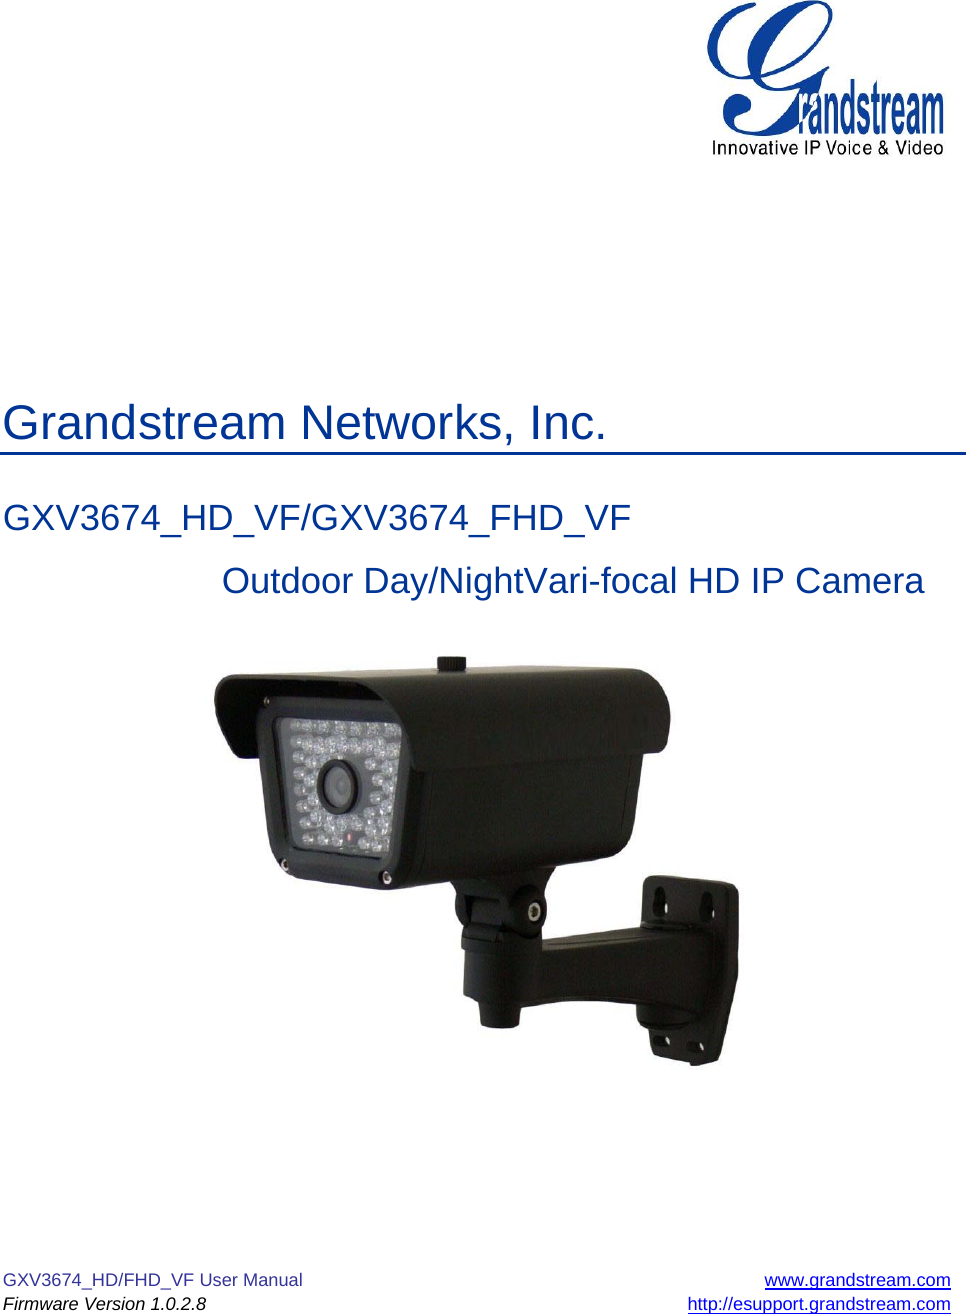 GXV3674_HD/FHD_VF User Manual  www.grandstream.com Firmware Version 1.0.2.8 http://esupport.grandstream.com             Grandstream Networks, Inc.  GXV3674_HD_VF/GXV3674_FHD_VF    Outdoor Day/NightVari-focal HD IP Camera          